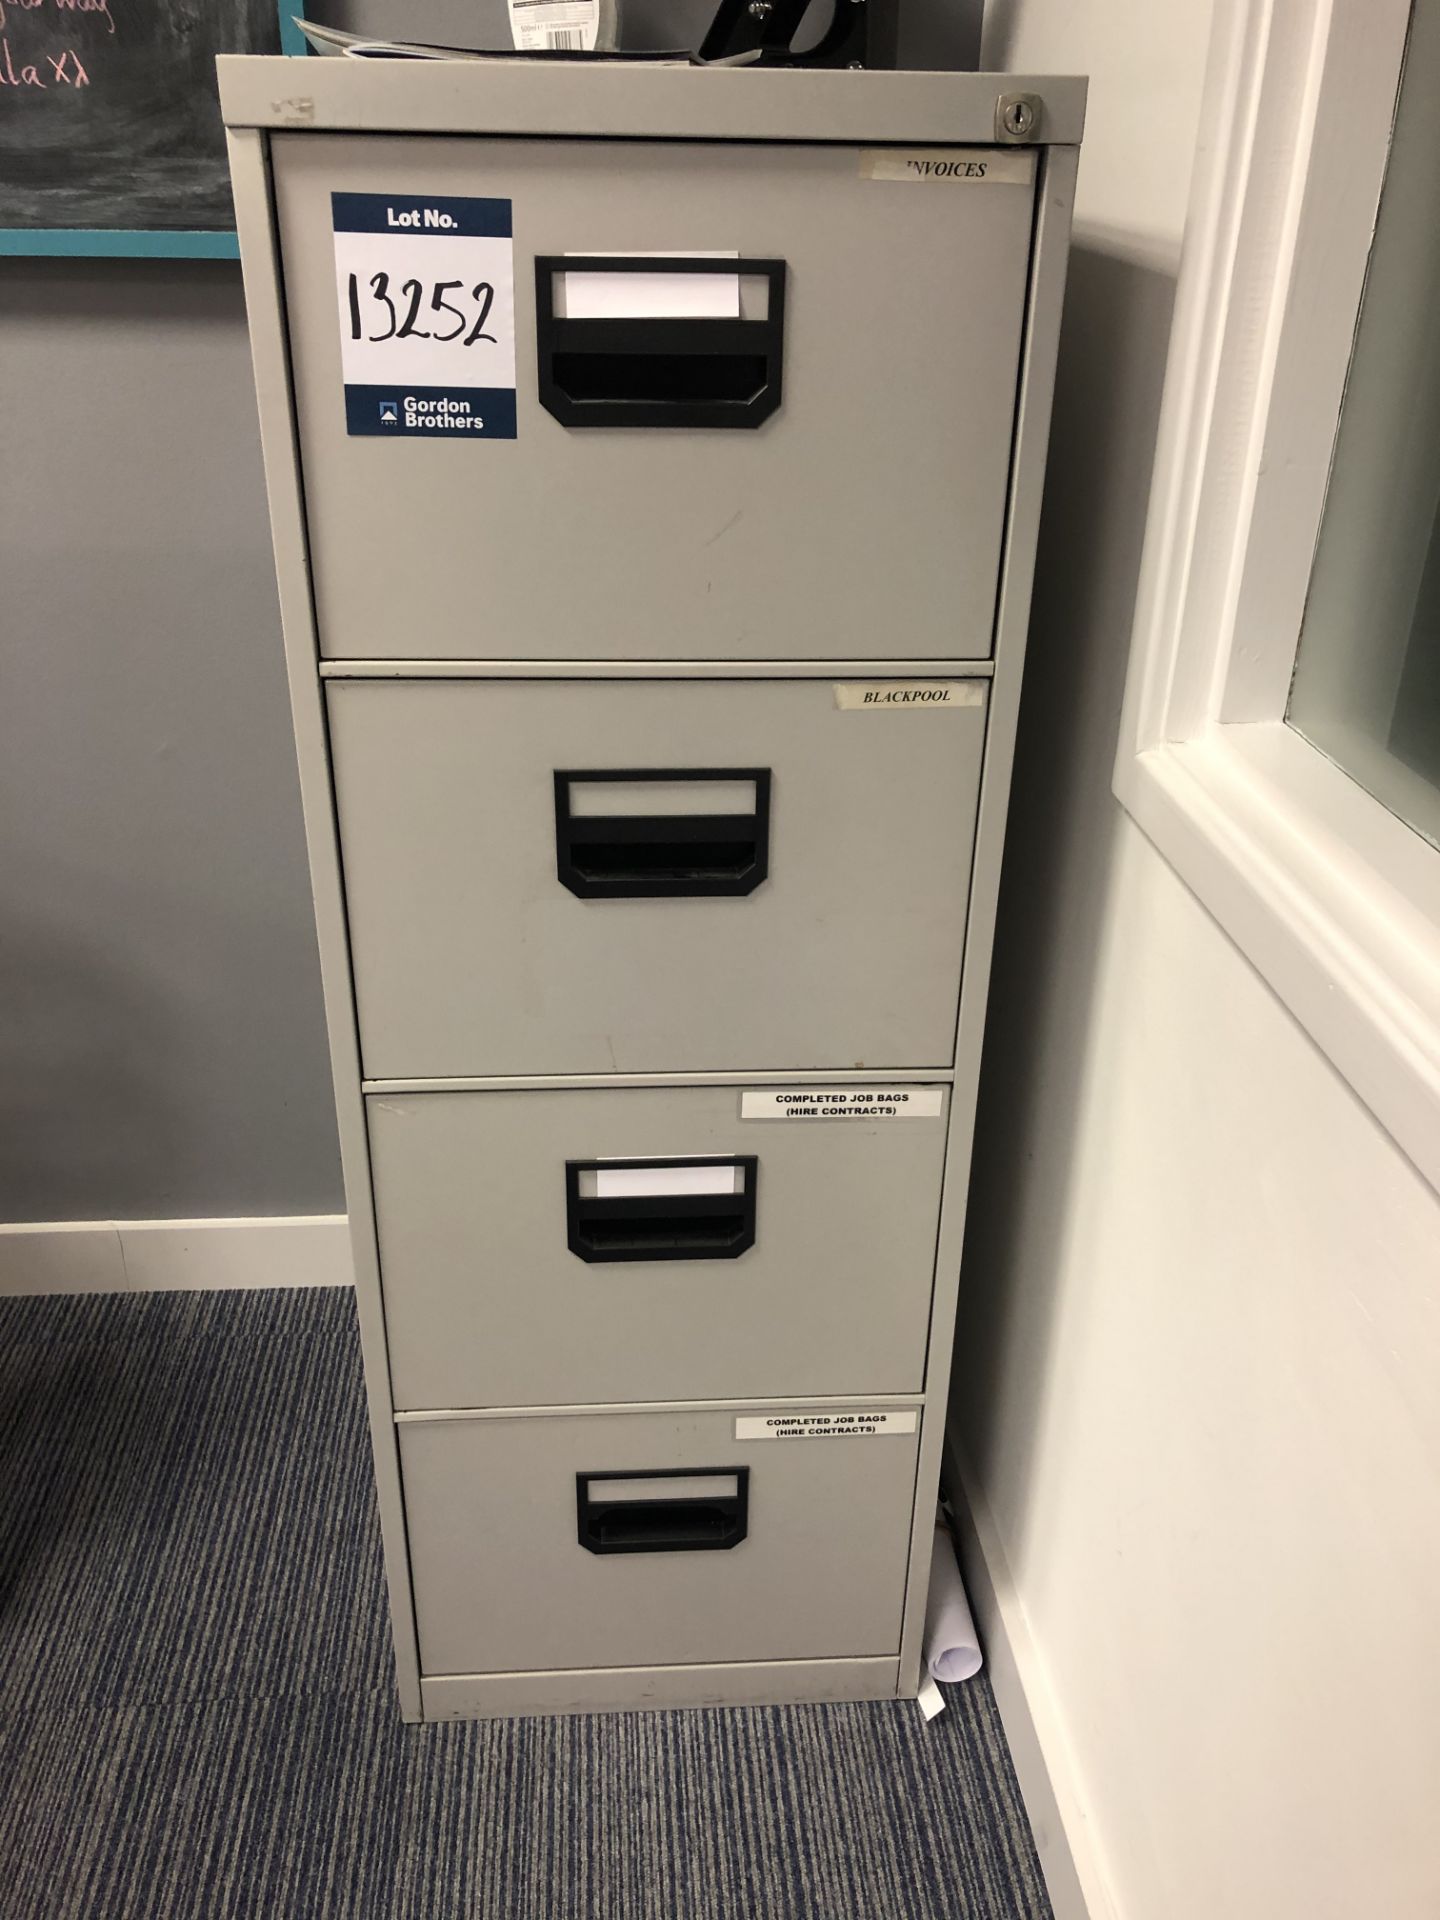 Metal four drawer filing cabinet